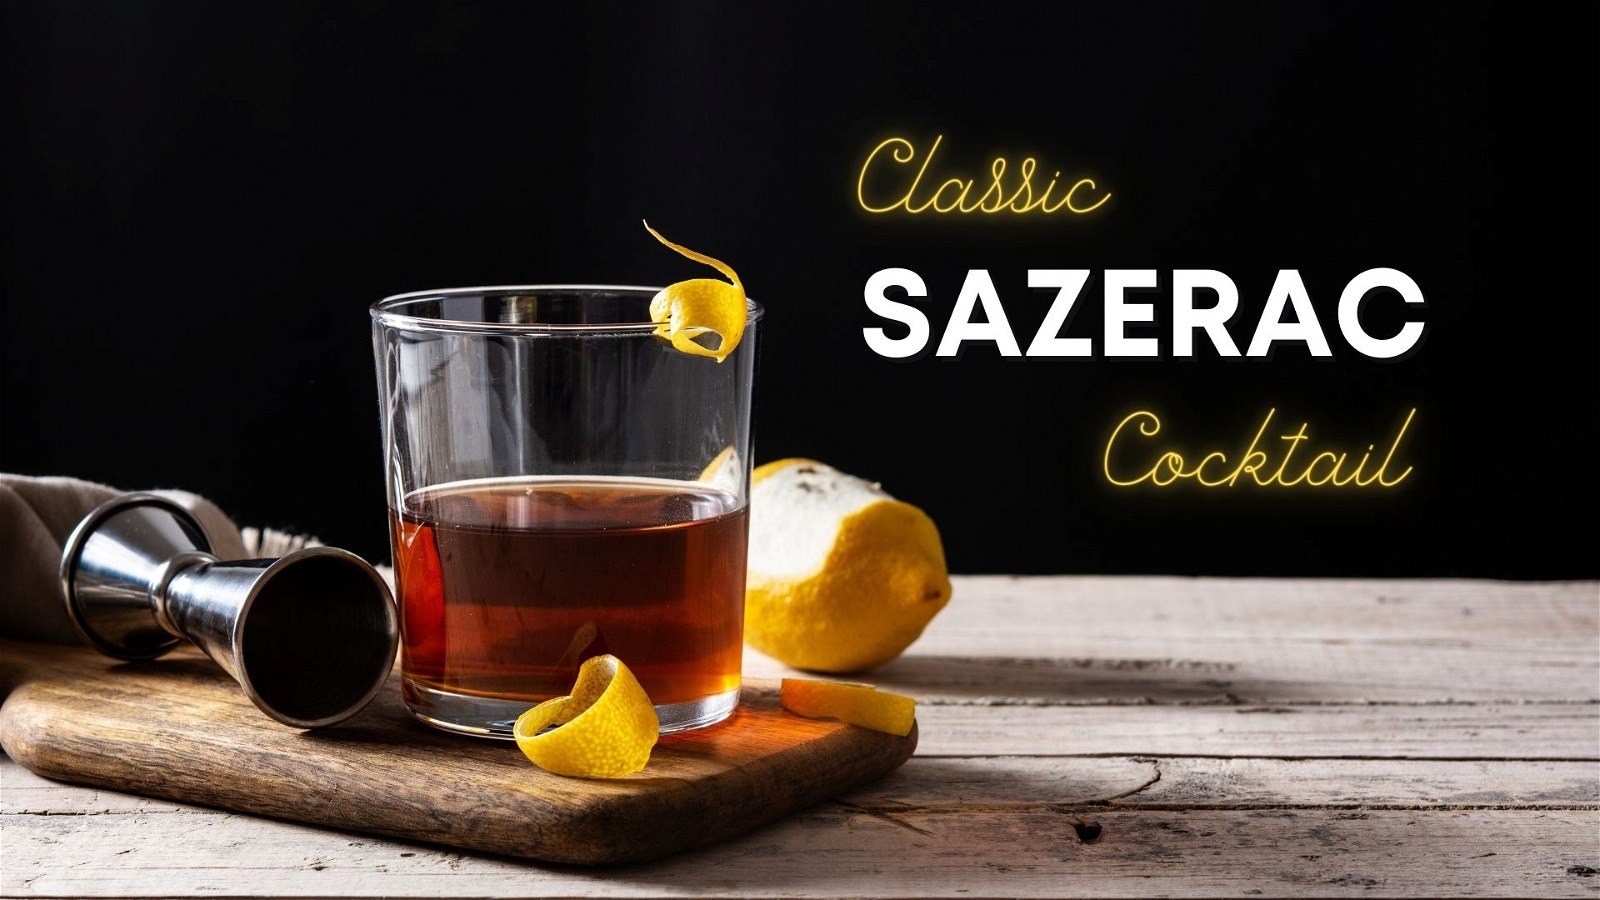 Image of Classic Sazerac